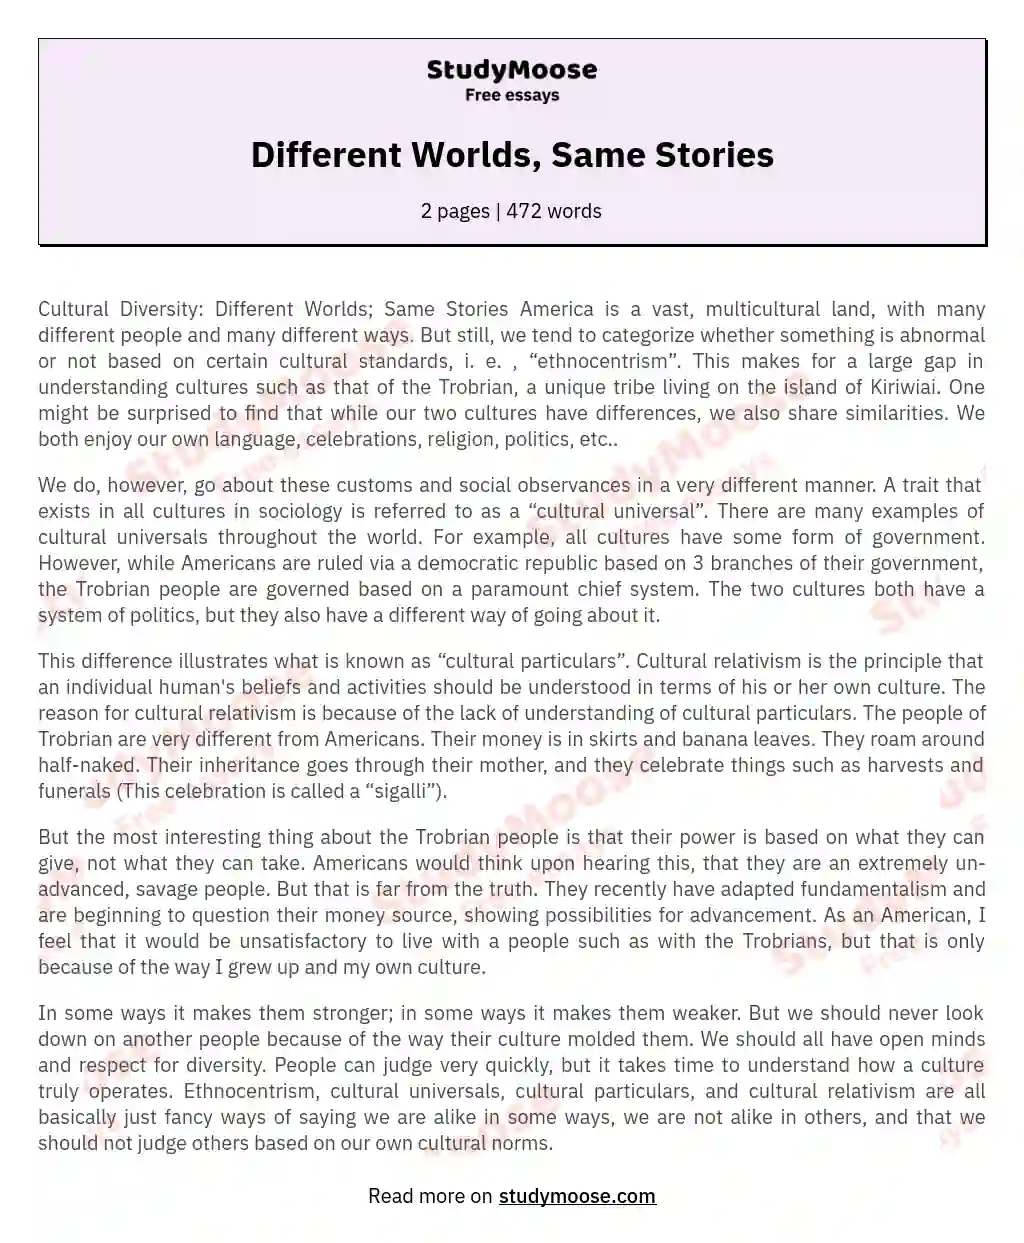 Different Worlds, Same Stories essay